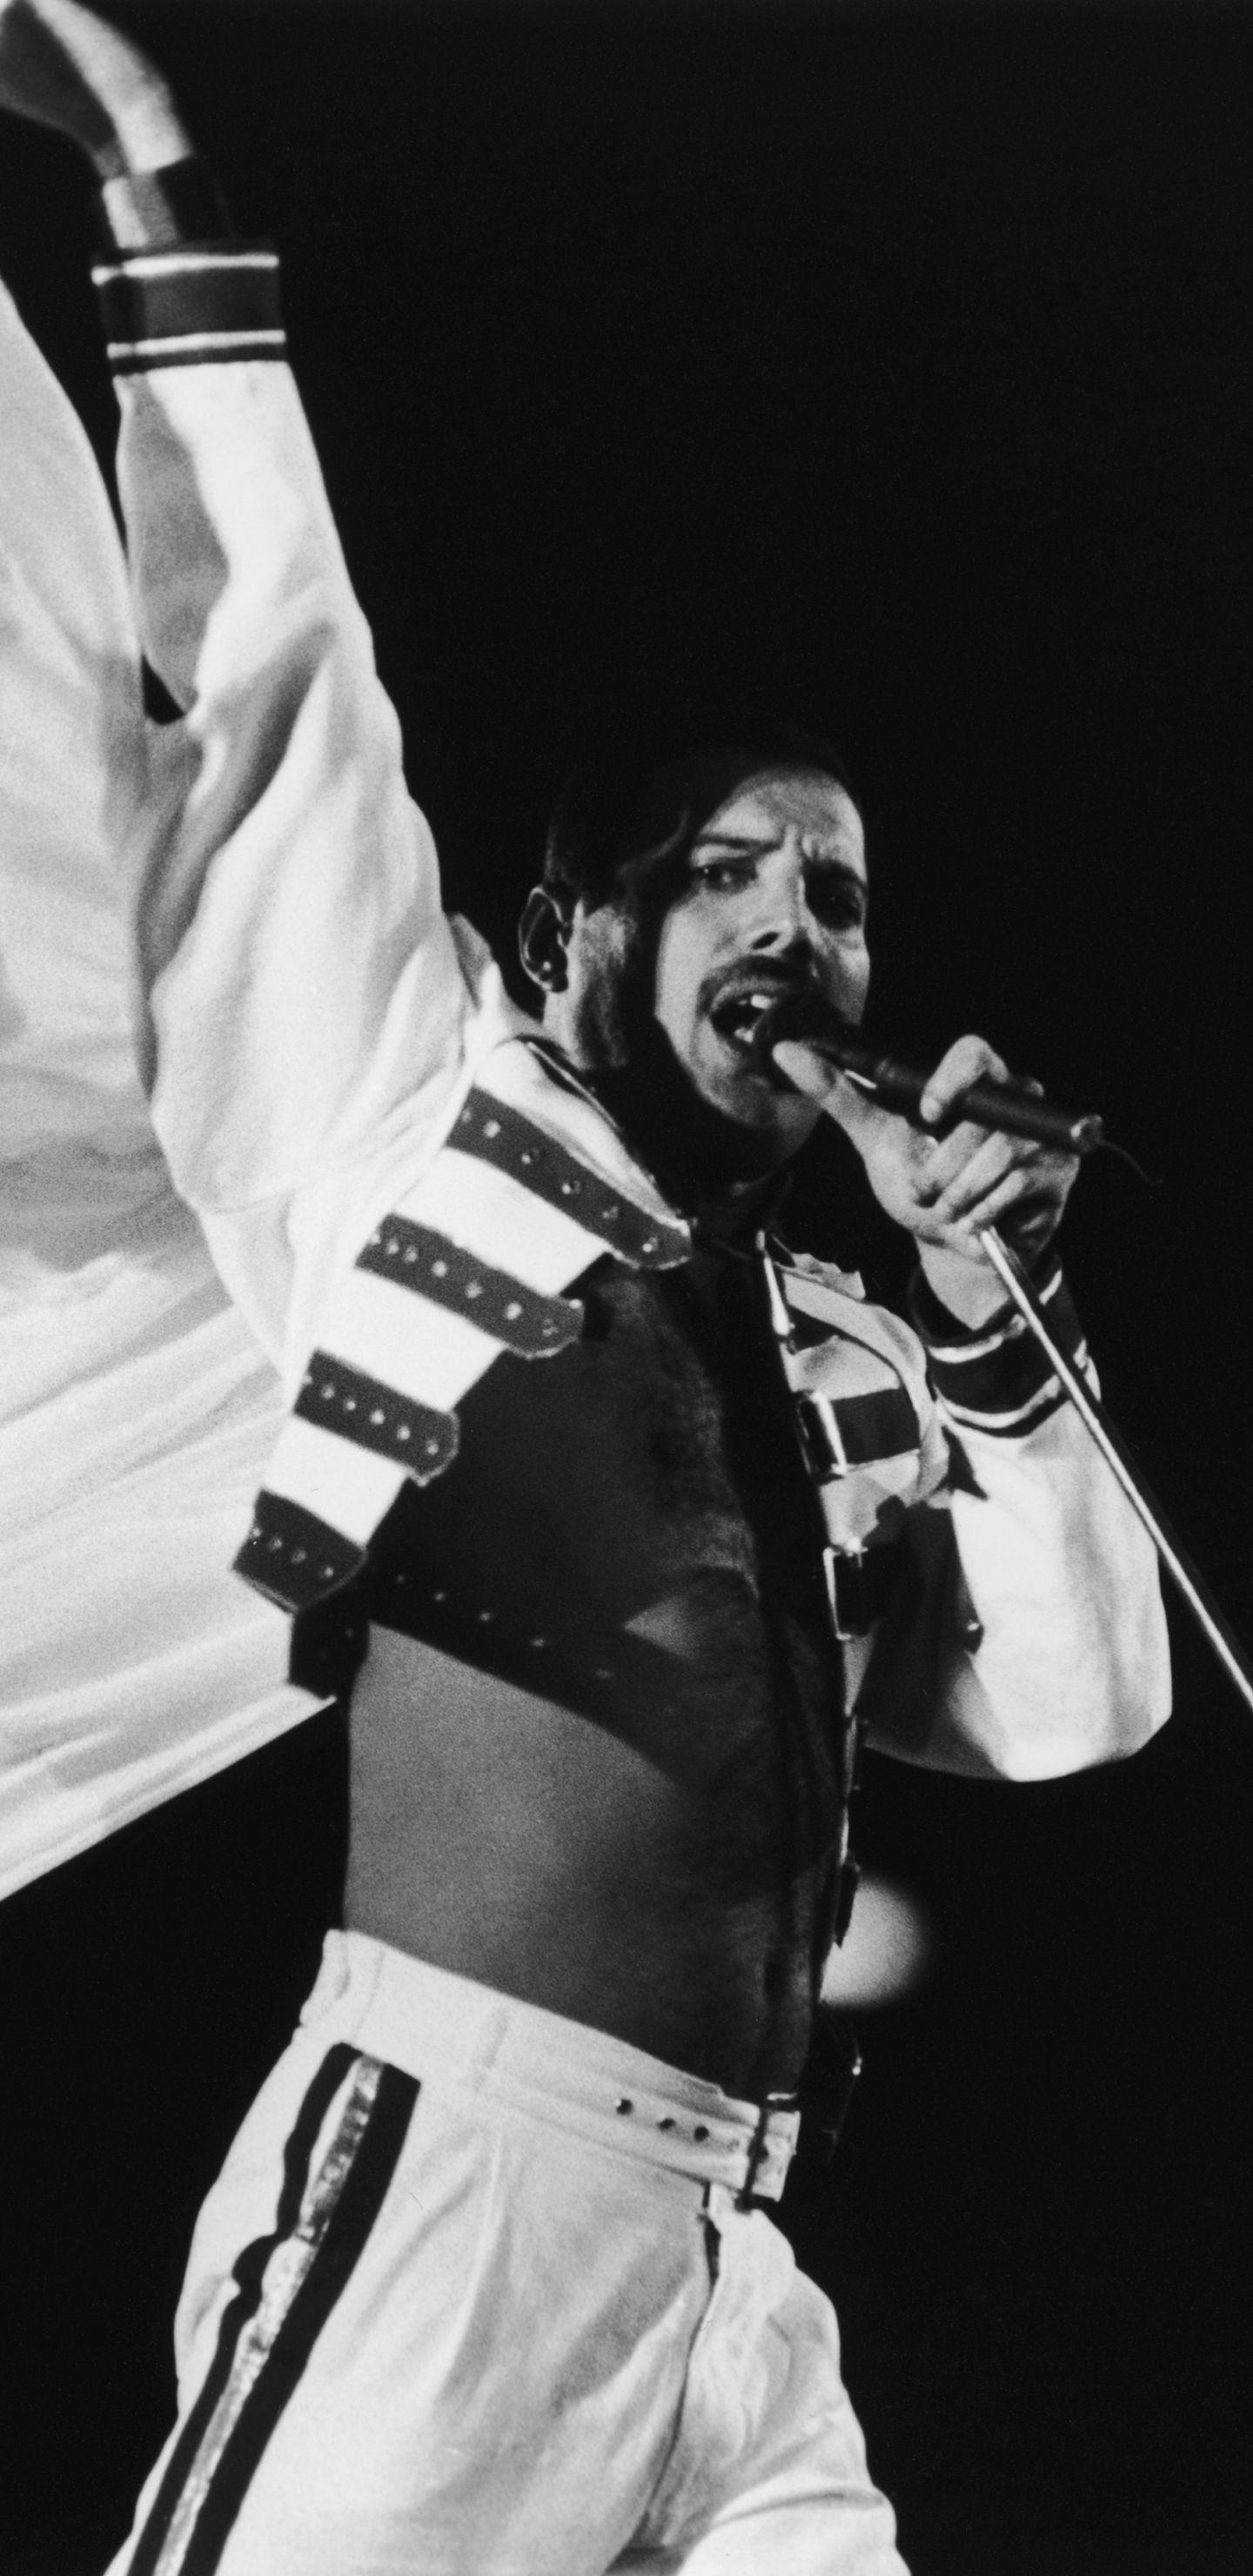 Freddie Mercury Iphone Wallpapers Top Free Freddie Mercury Iphone Backgrounds Wallpaperaccess